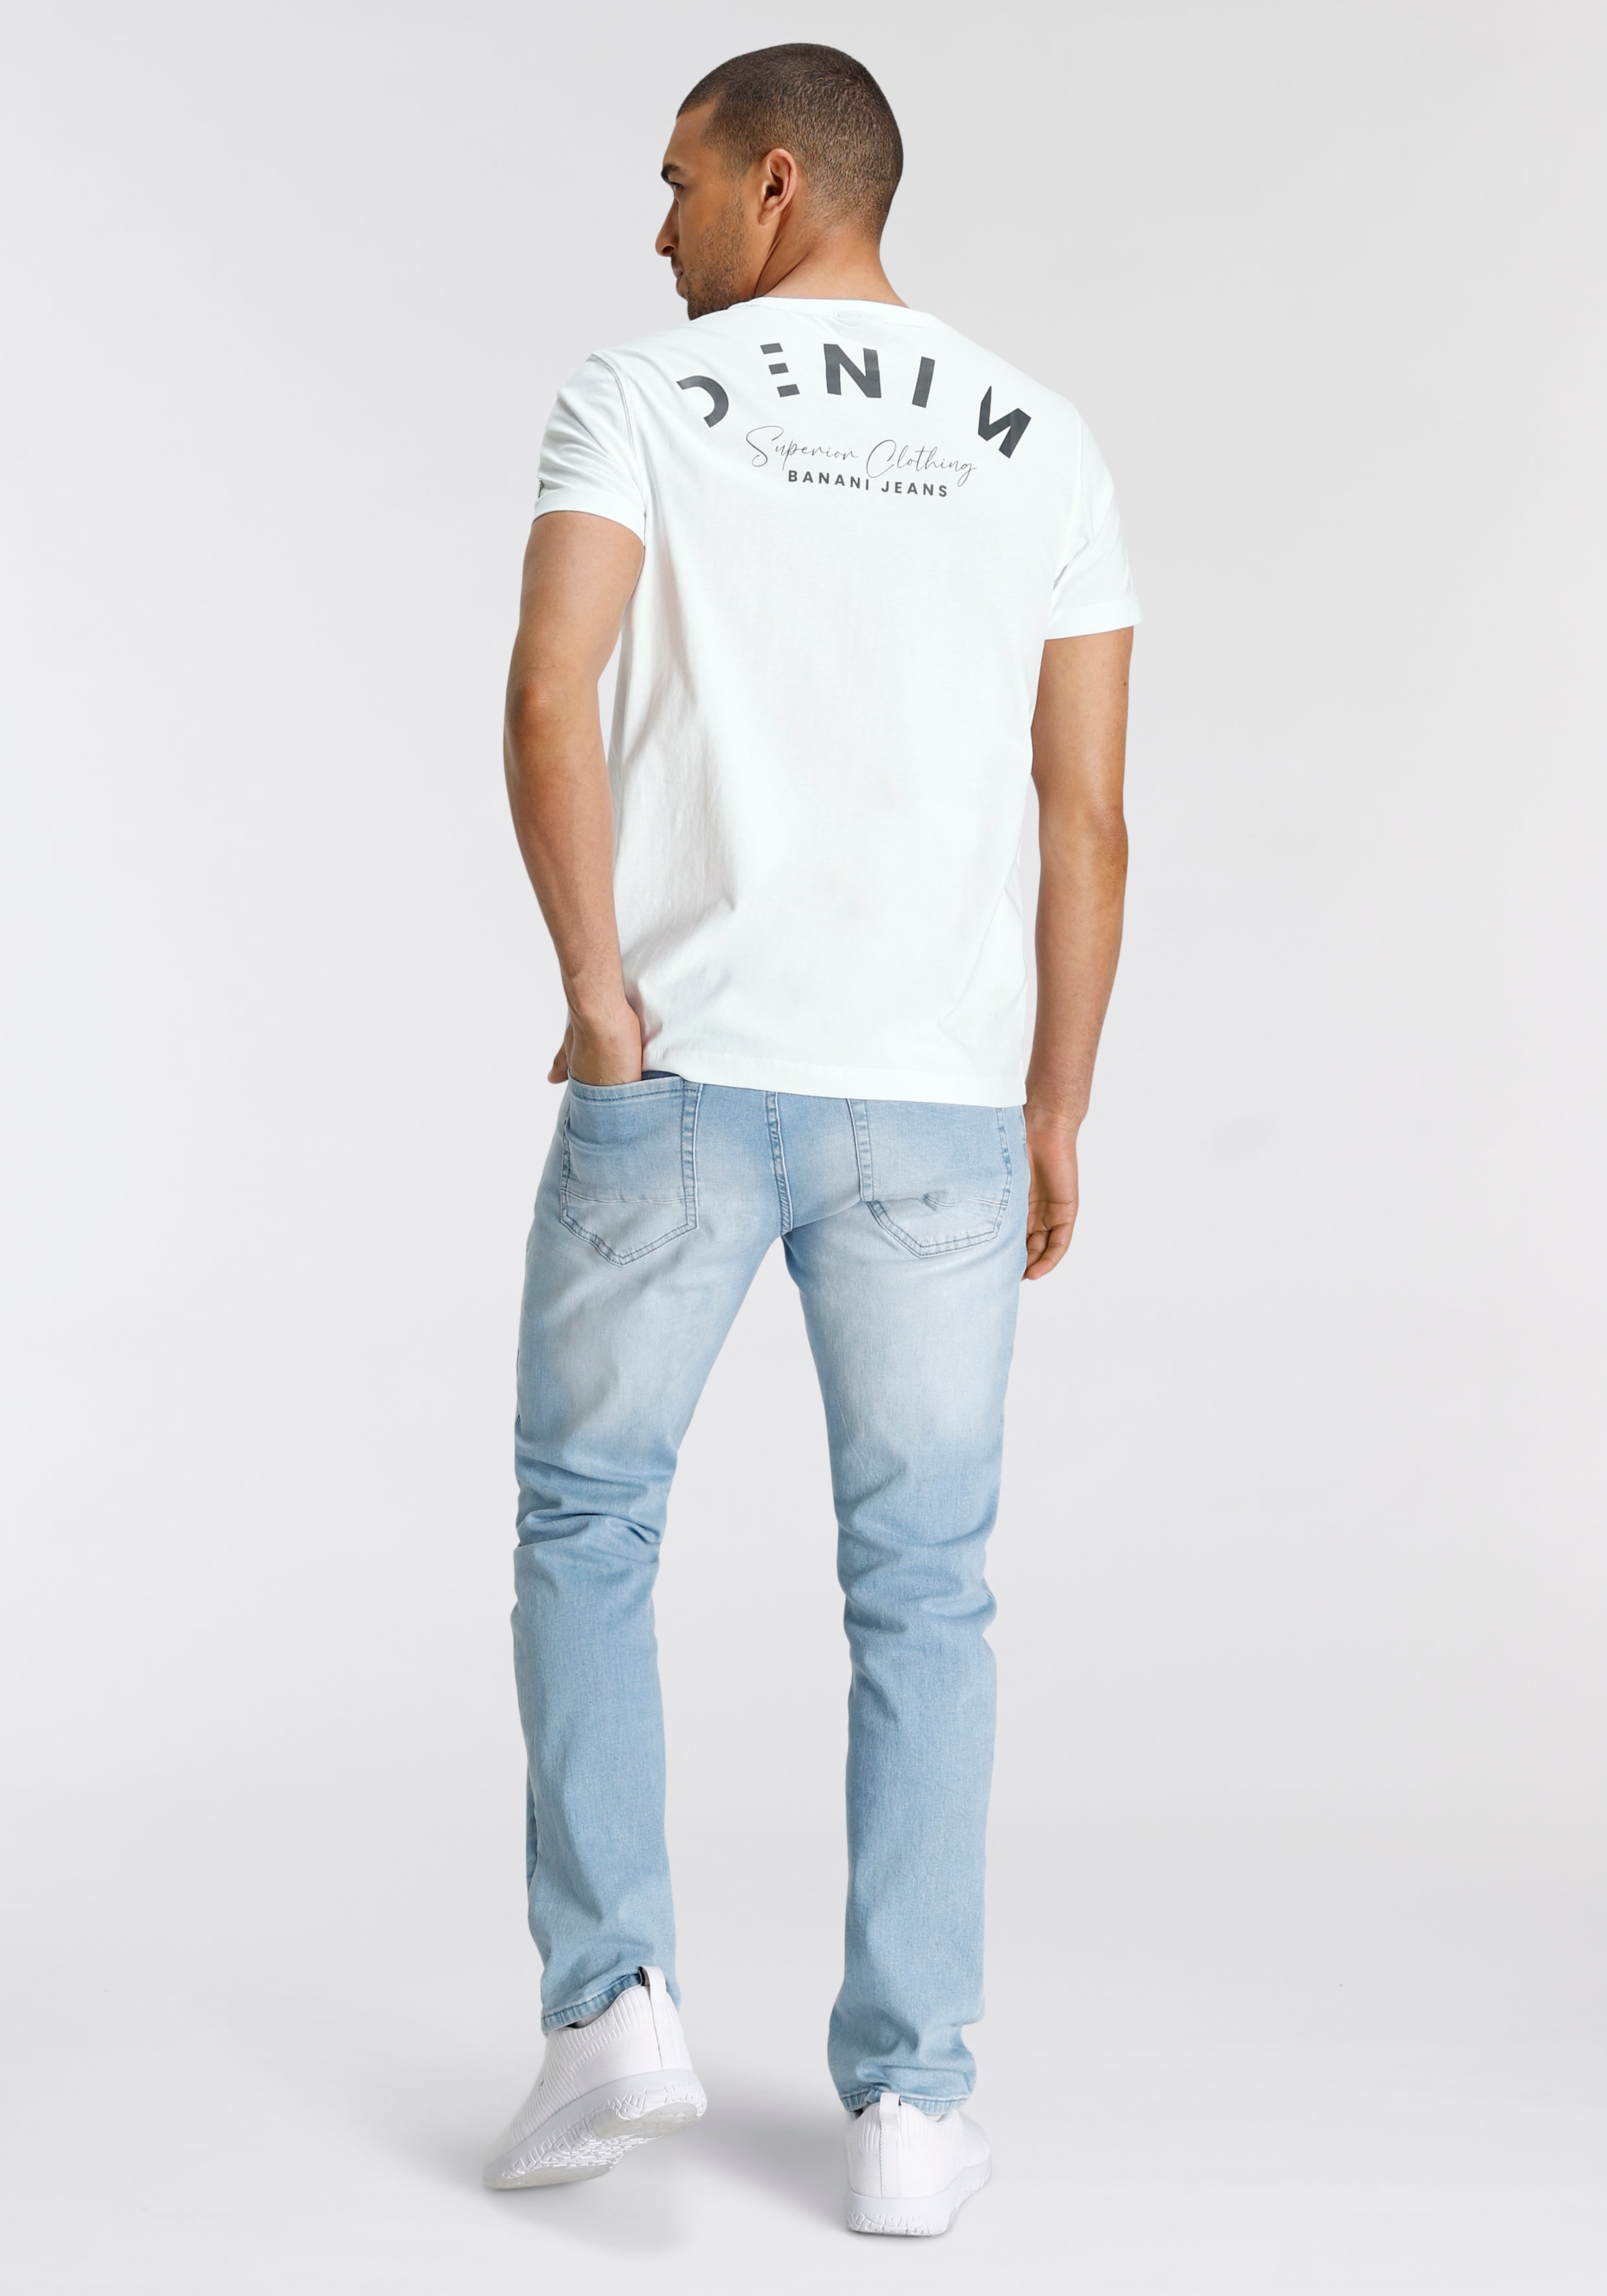 Rückenprint Bruno BAUR ▷ T-Shirt, mit coolem | bestellen Banani